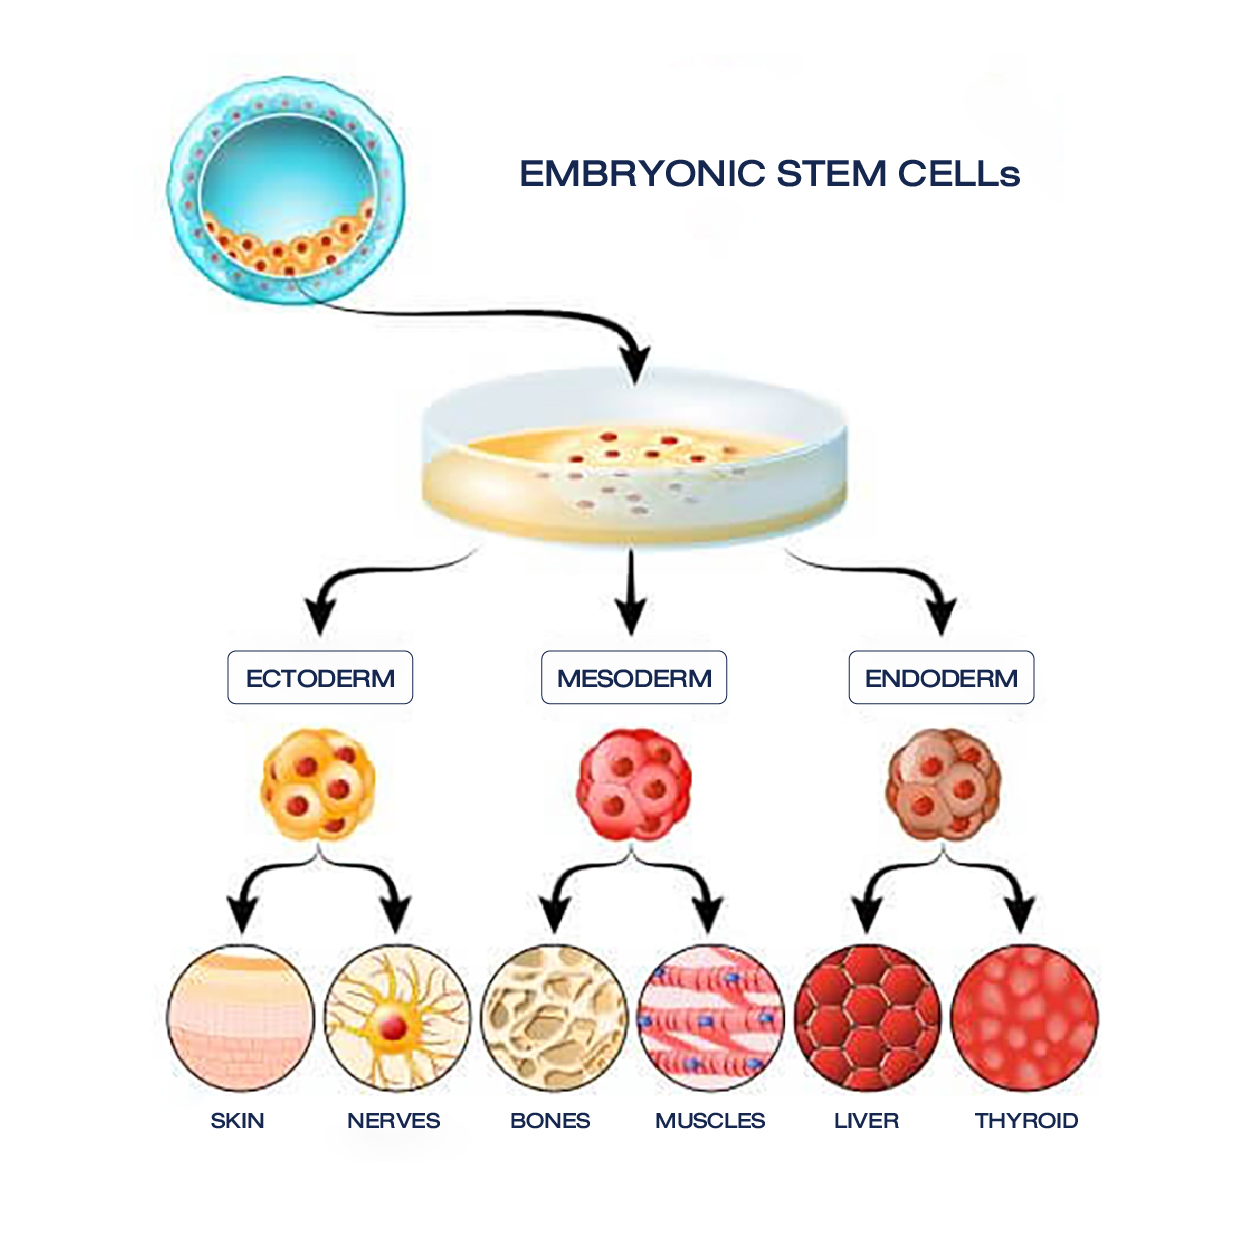 الخلايا الجذعية وأنواعها 